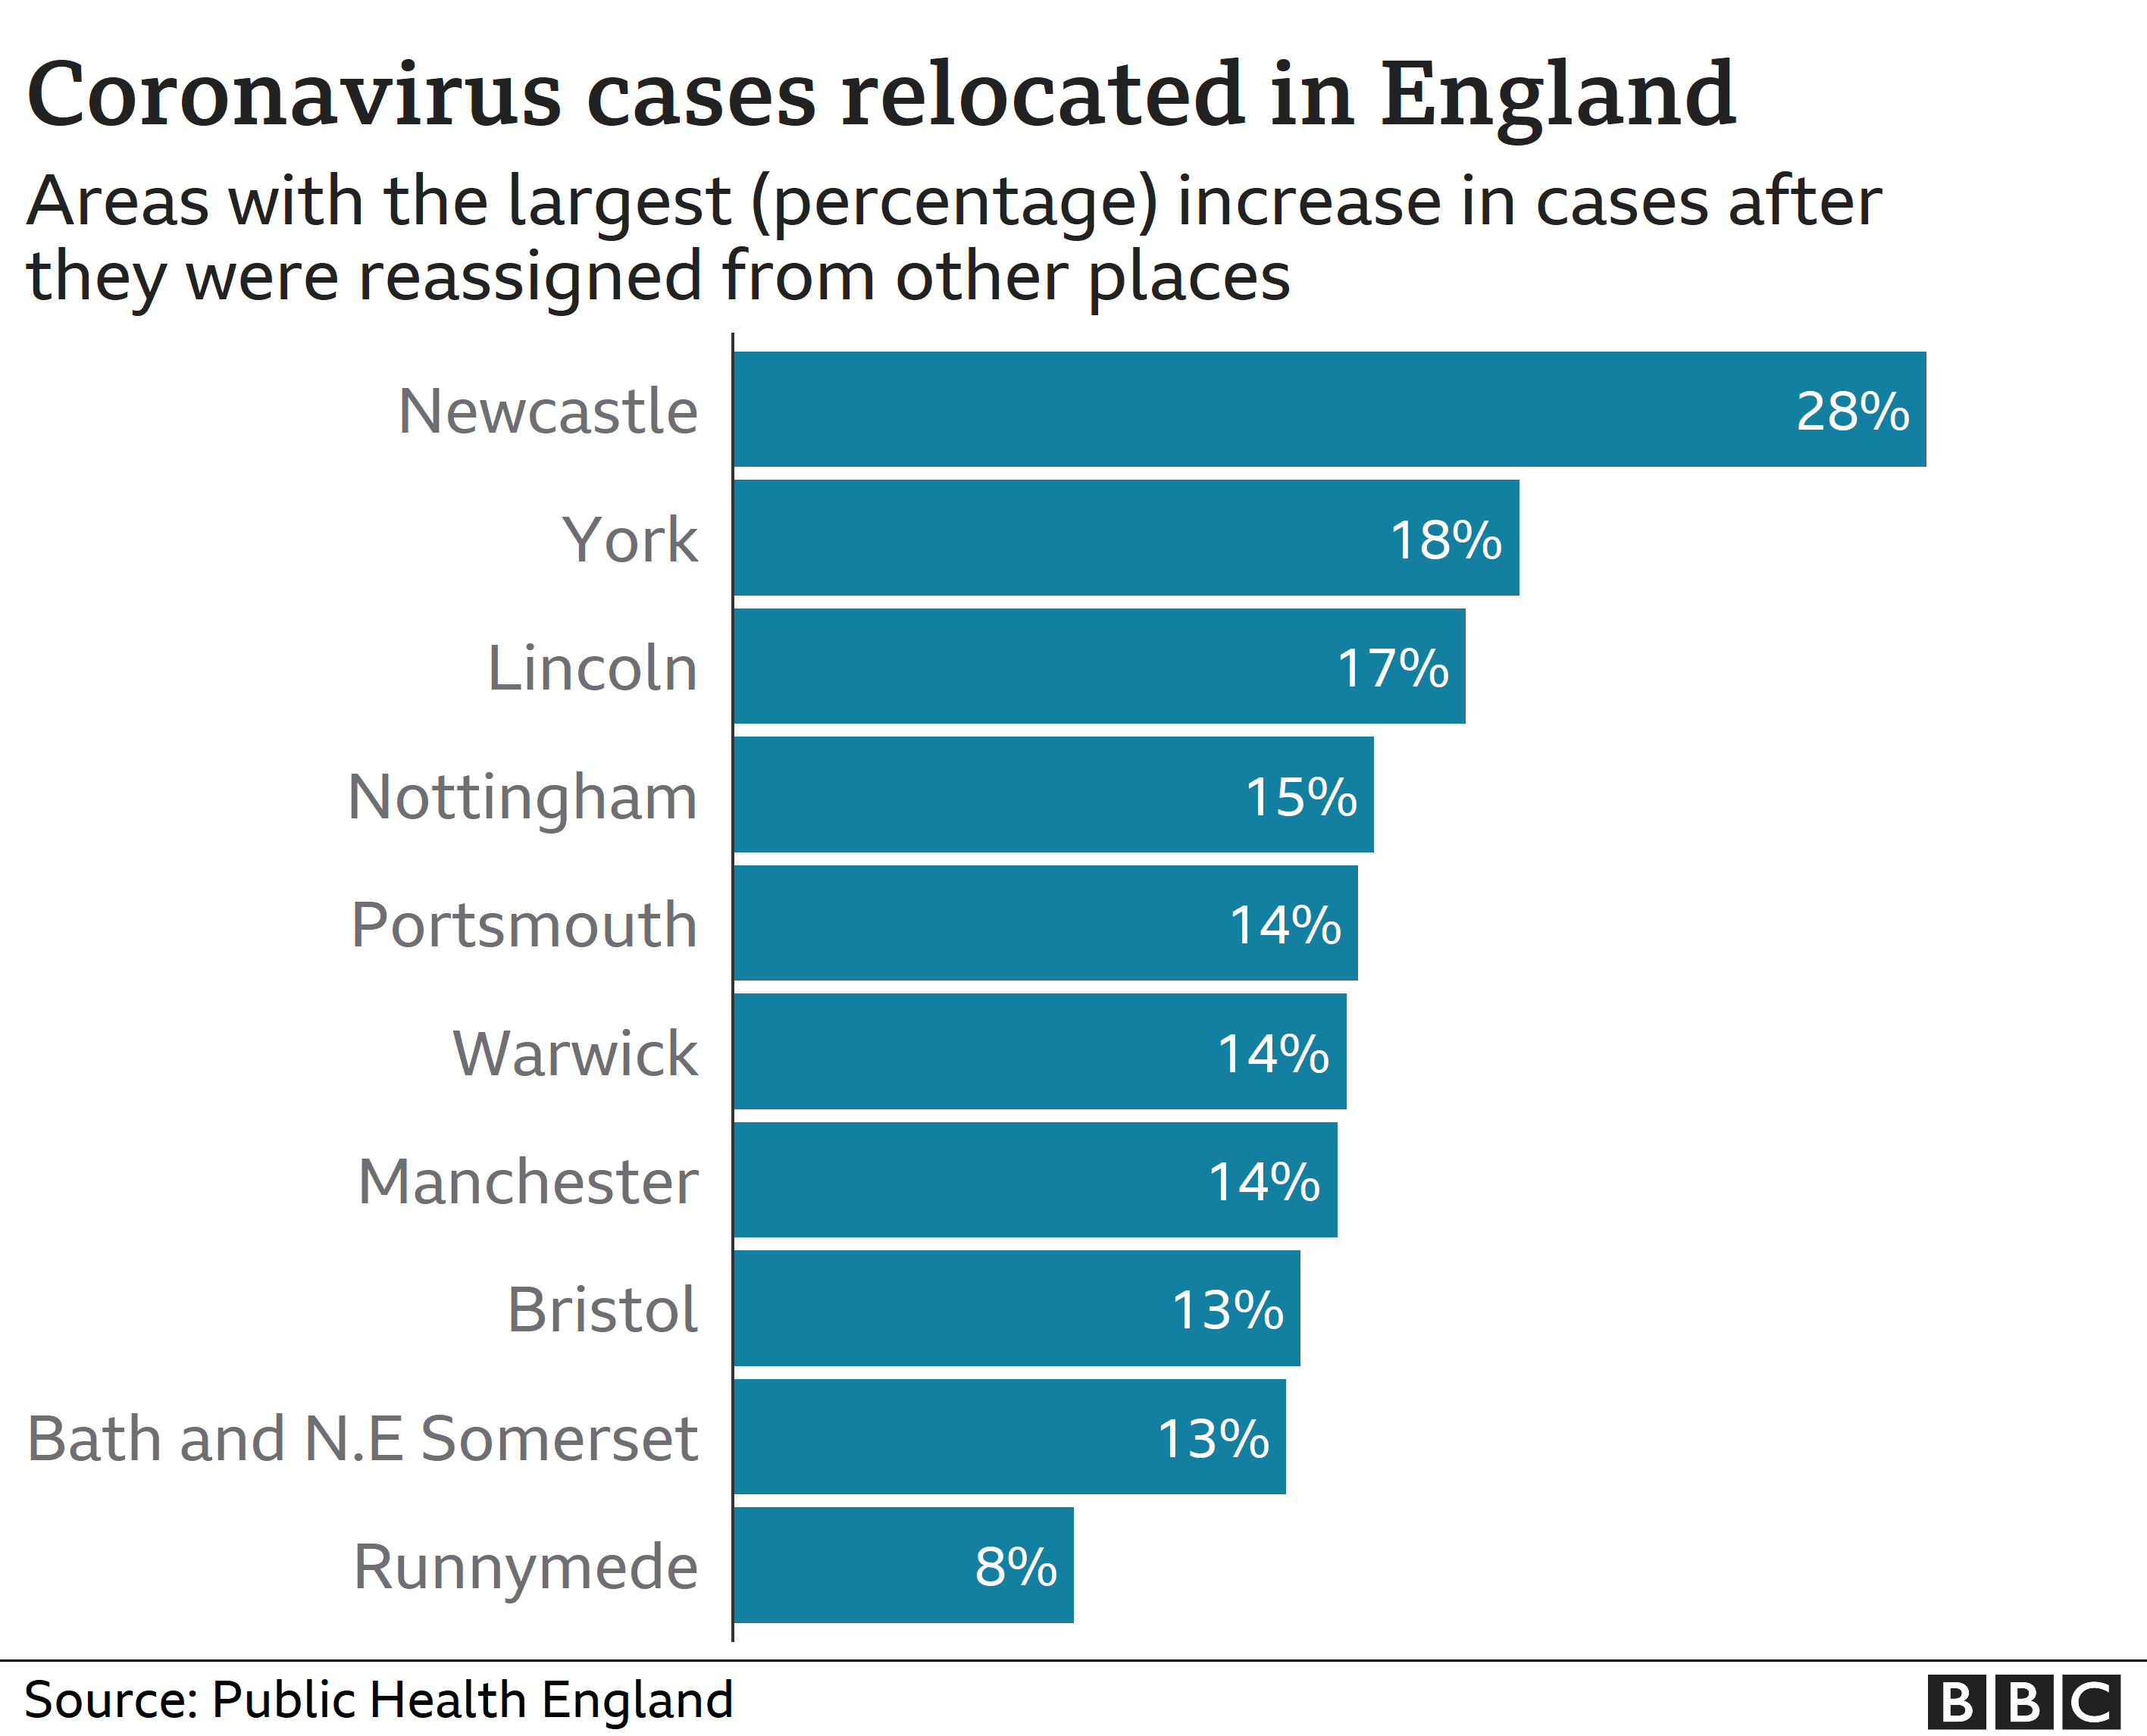 Районы, в которых зарегистрировано наибольшее процентное увеличение случаев коронавируса